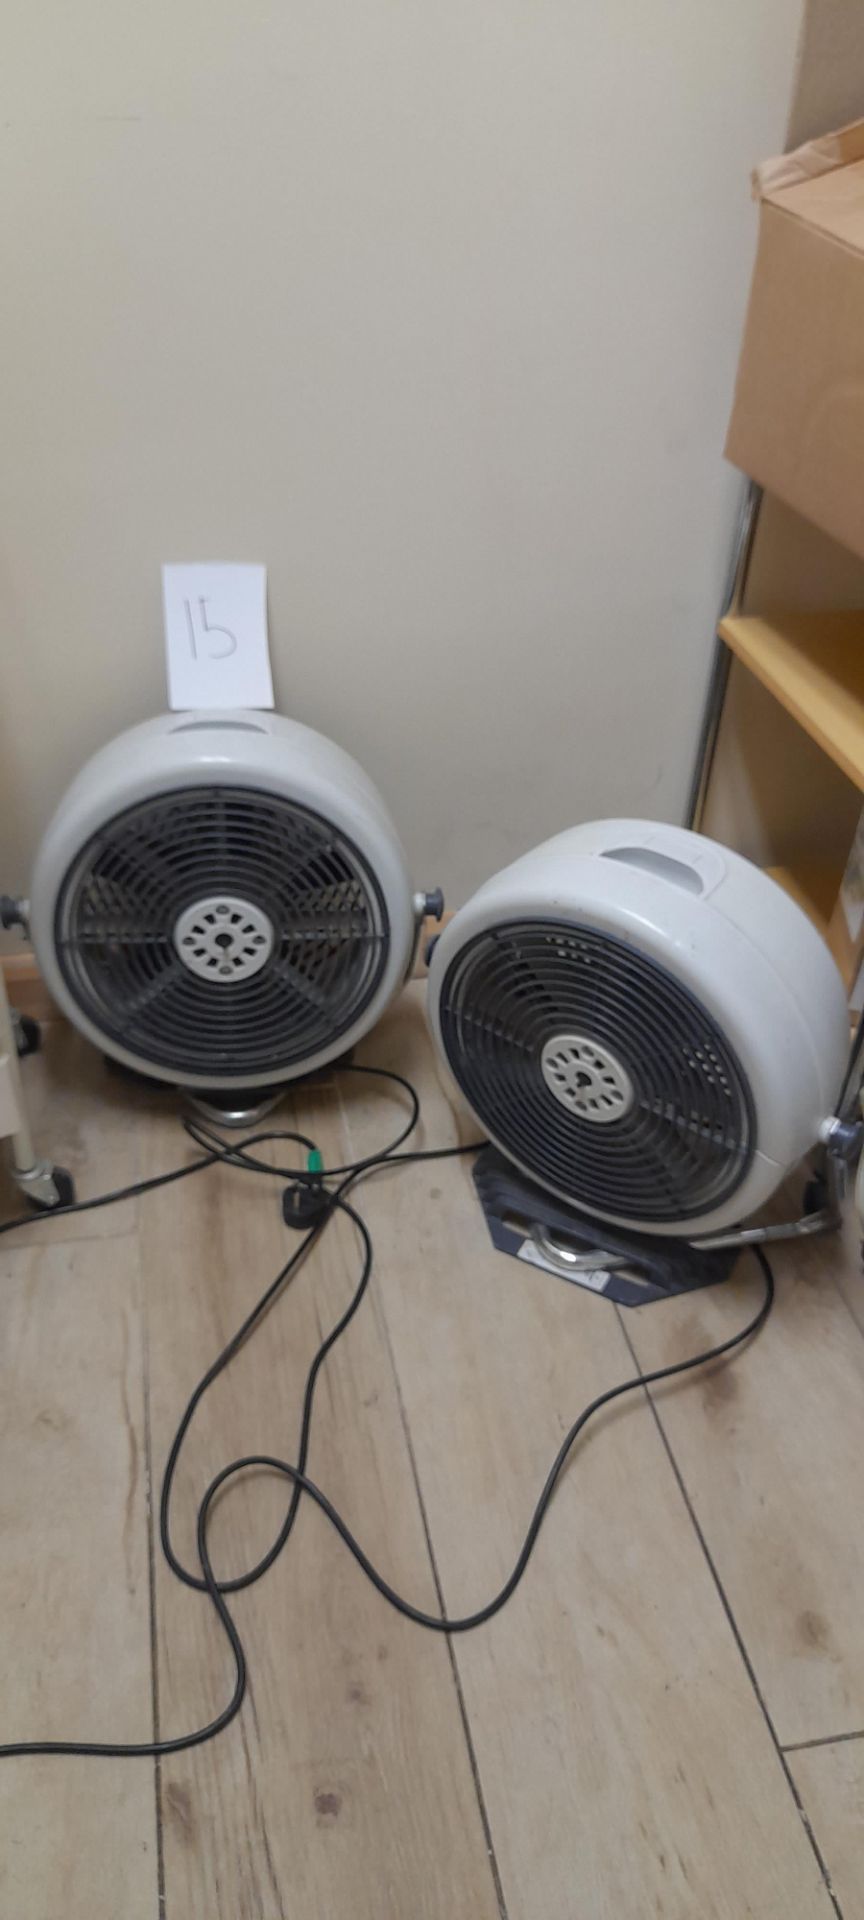 2 x Floor standing electric fans